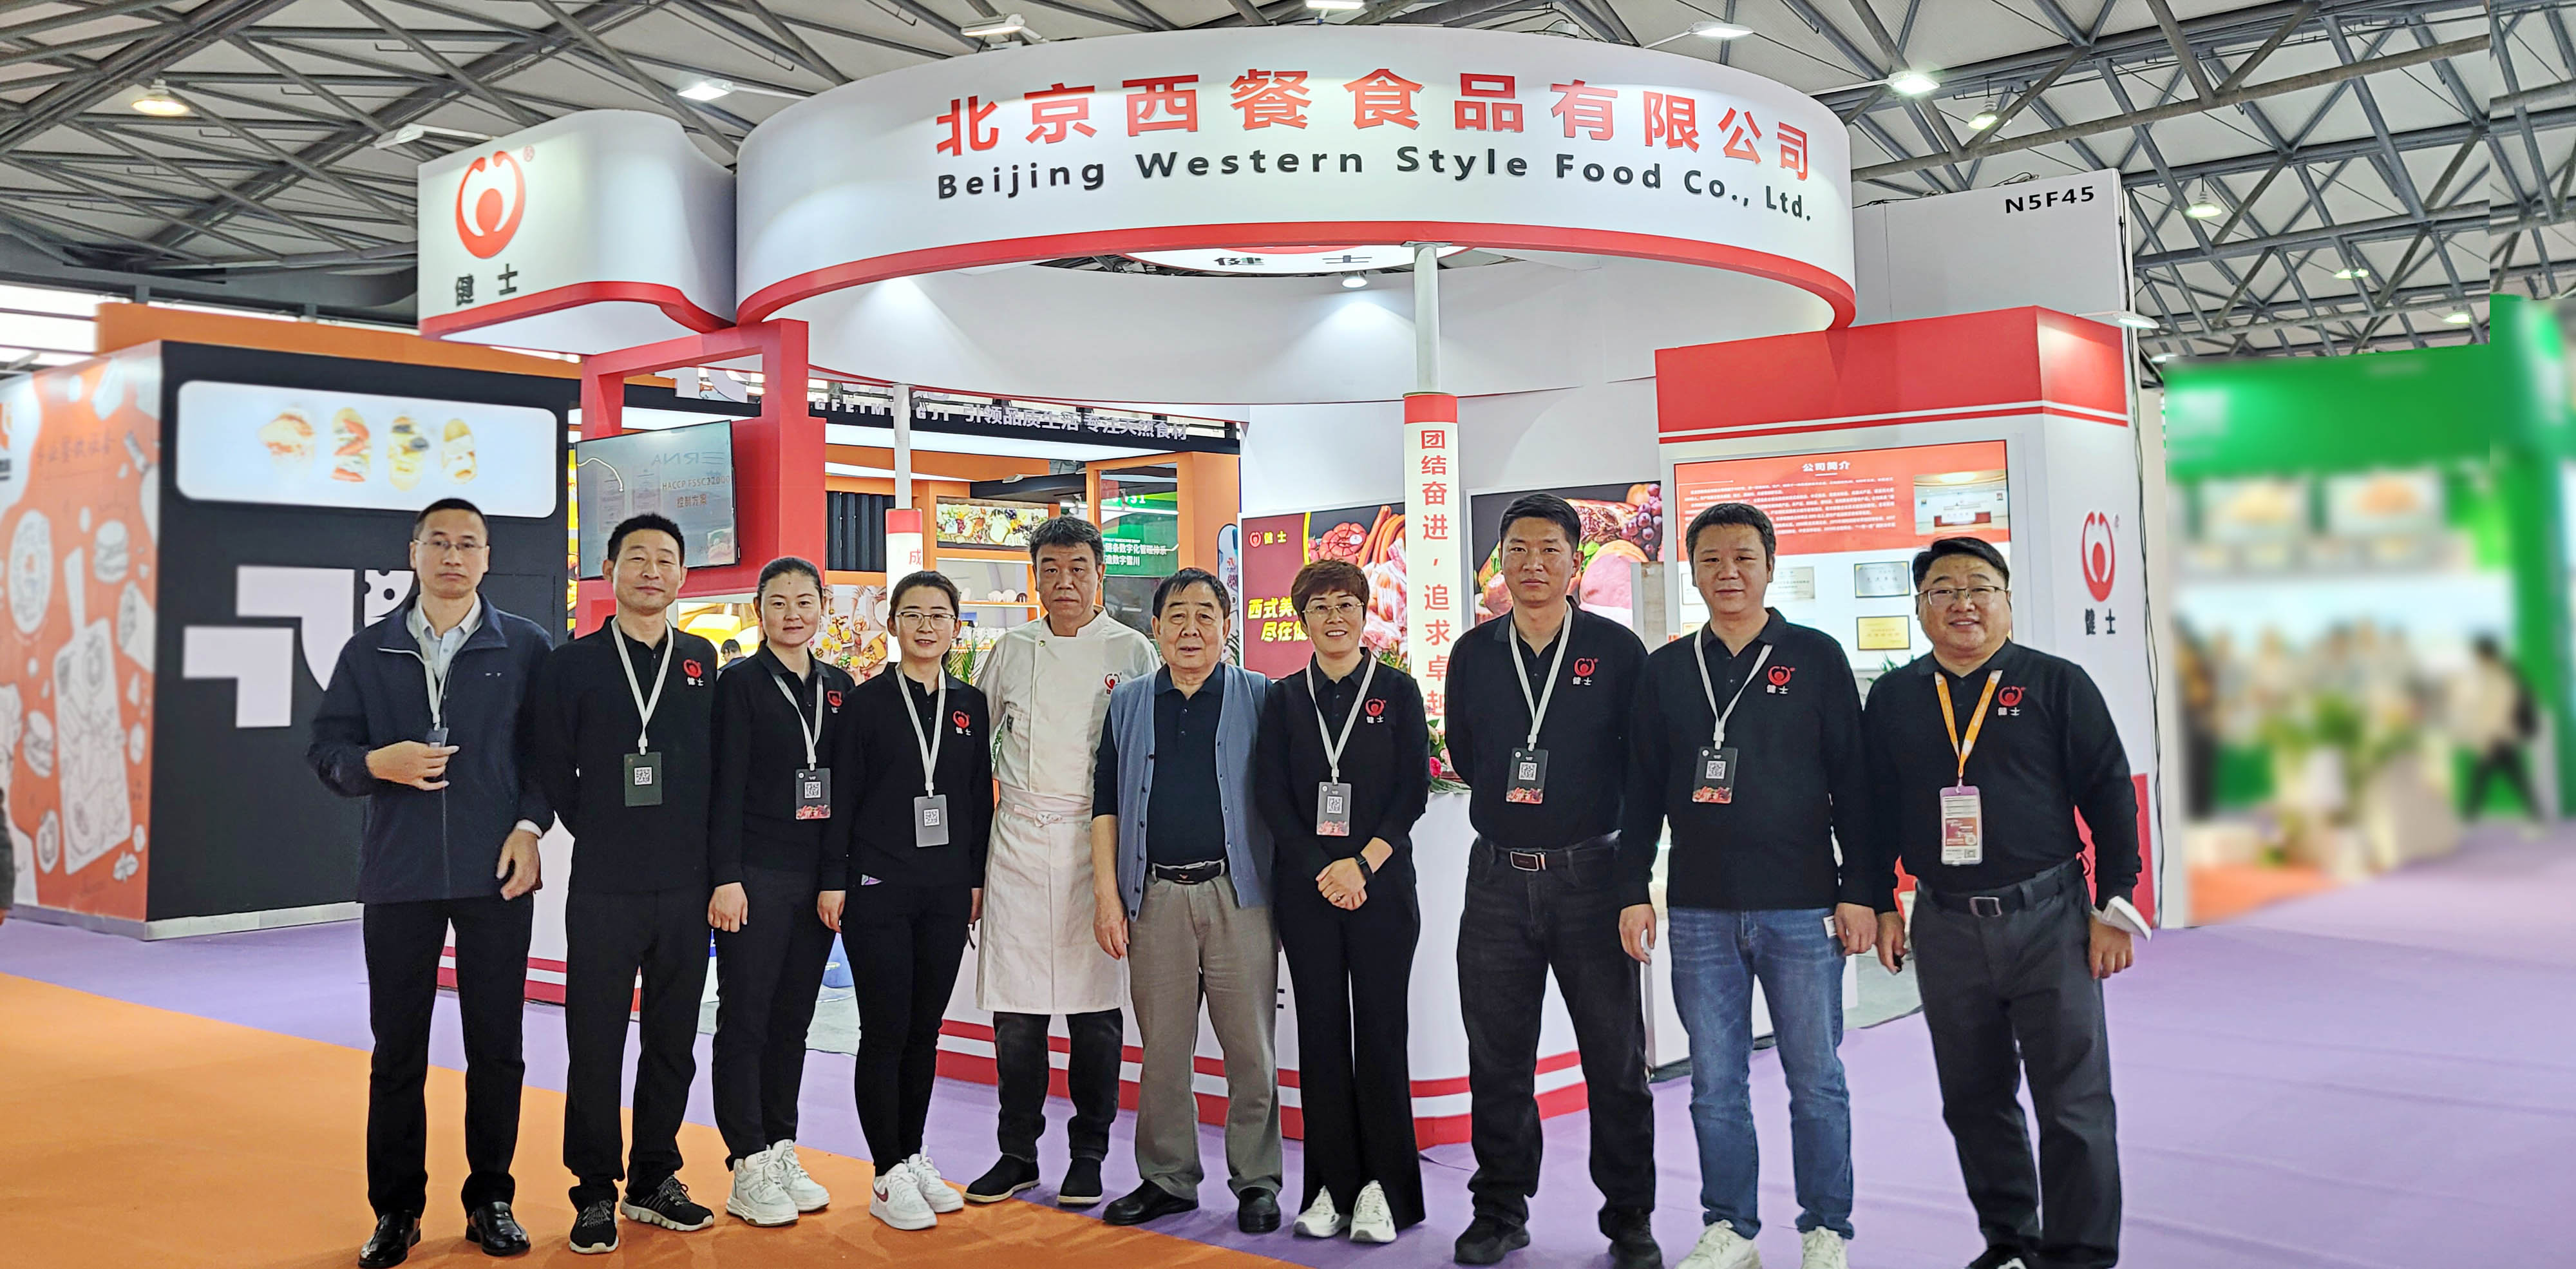 北京西餐食品有限公司亮相第二十六屆 FHC 上海環球食品展